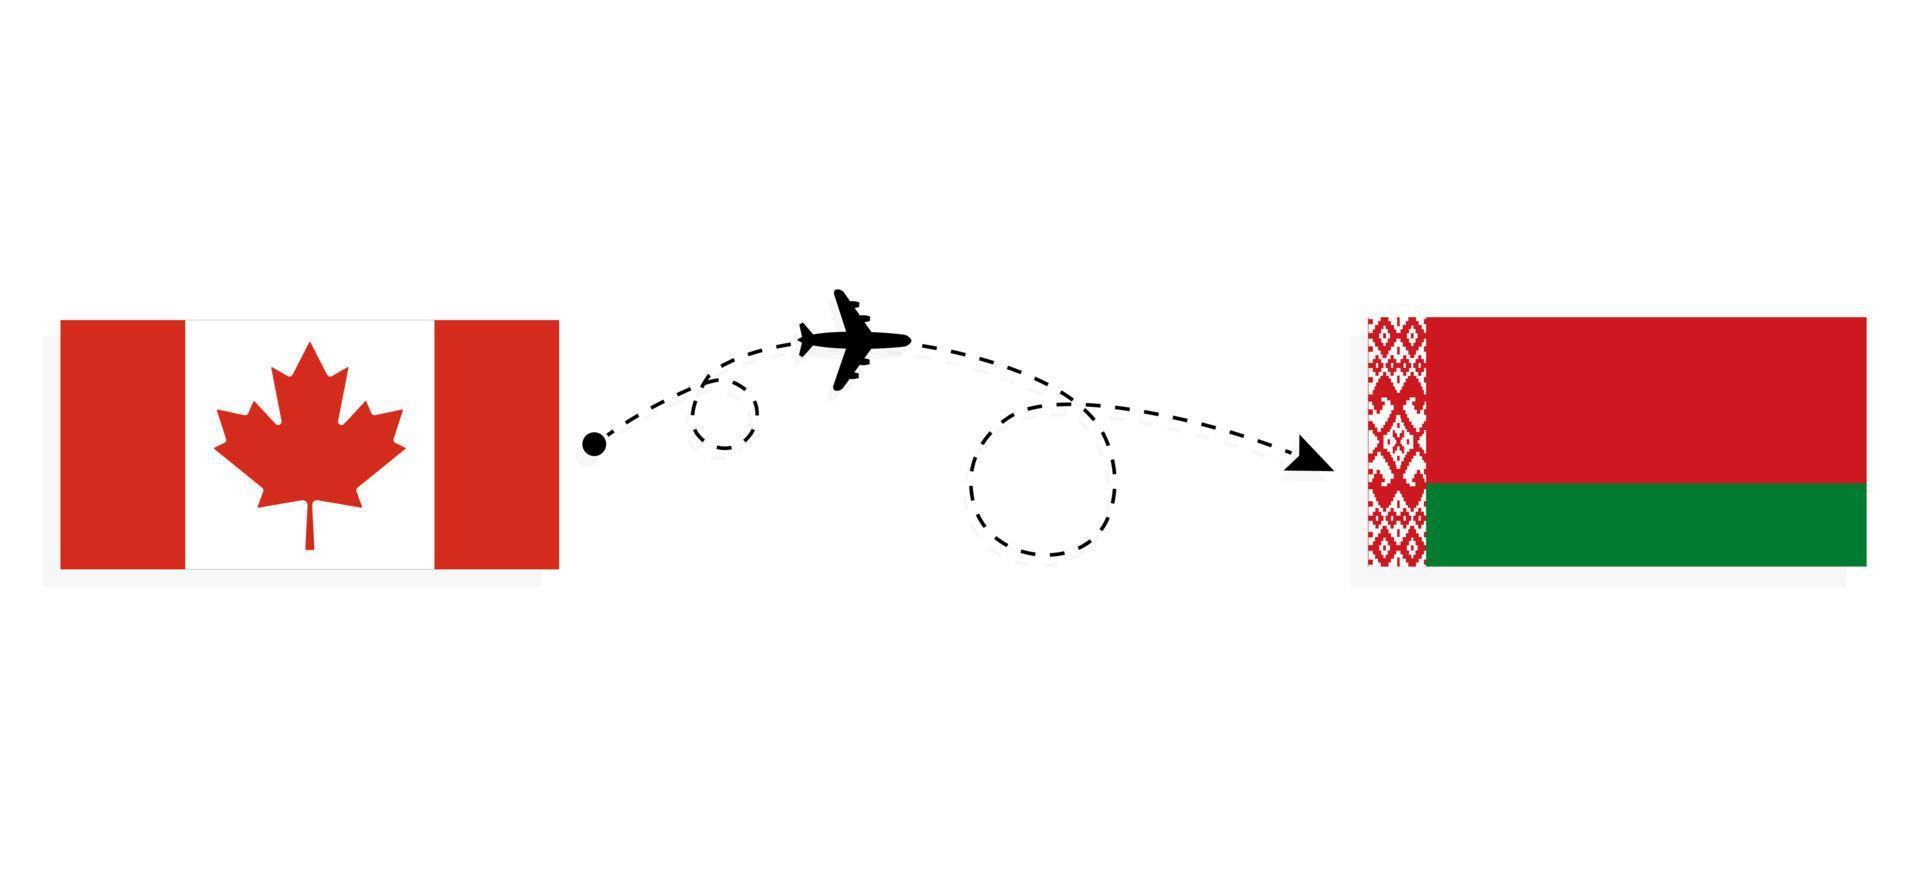 flyg och resor från Kanada till Vitryssland med passagerarflygplan vektor